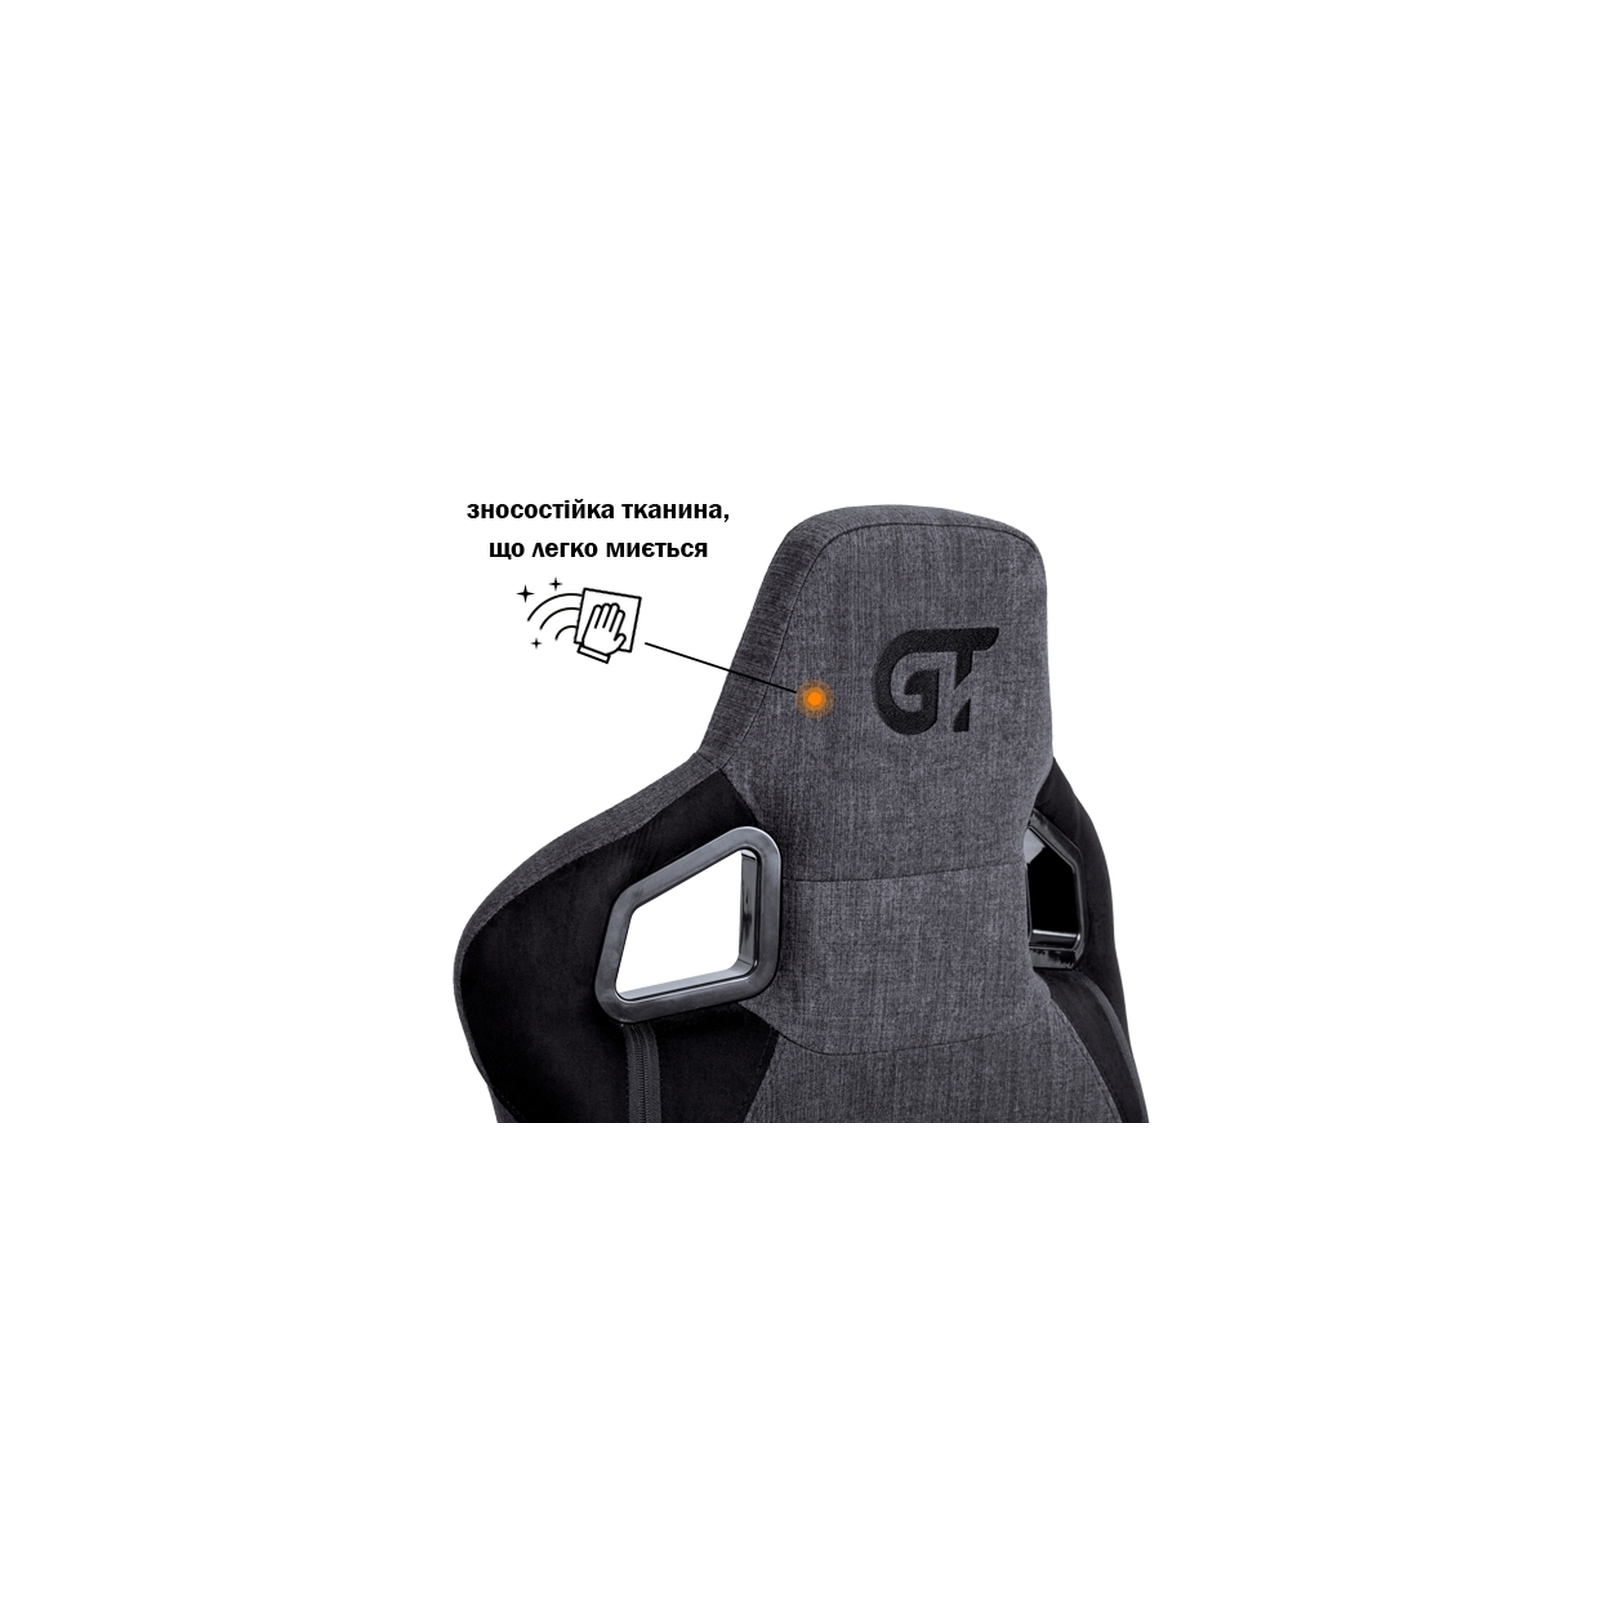 Крісло ігрове GT Racer X-8005 Dark Blue/Black зображення 5